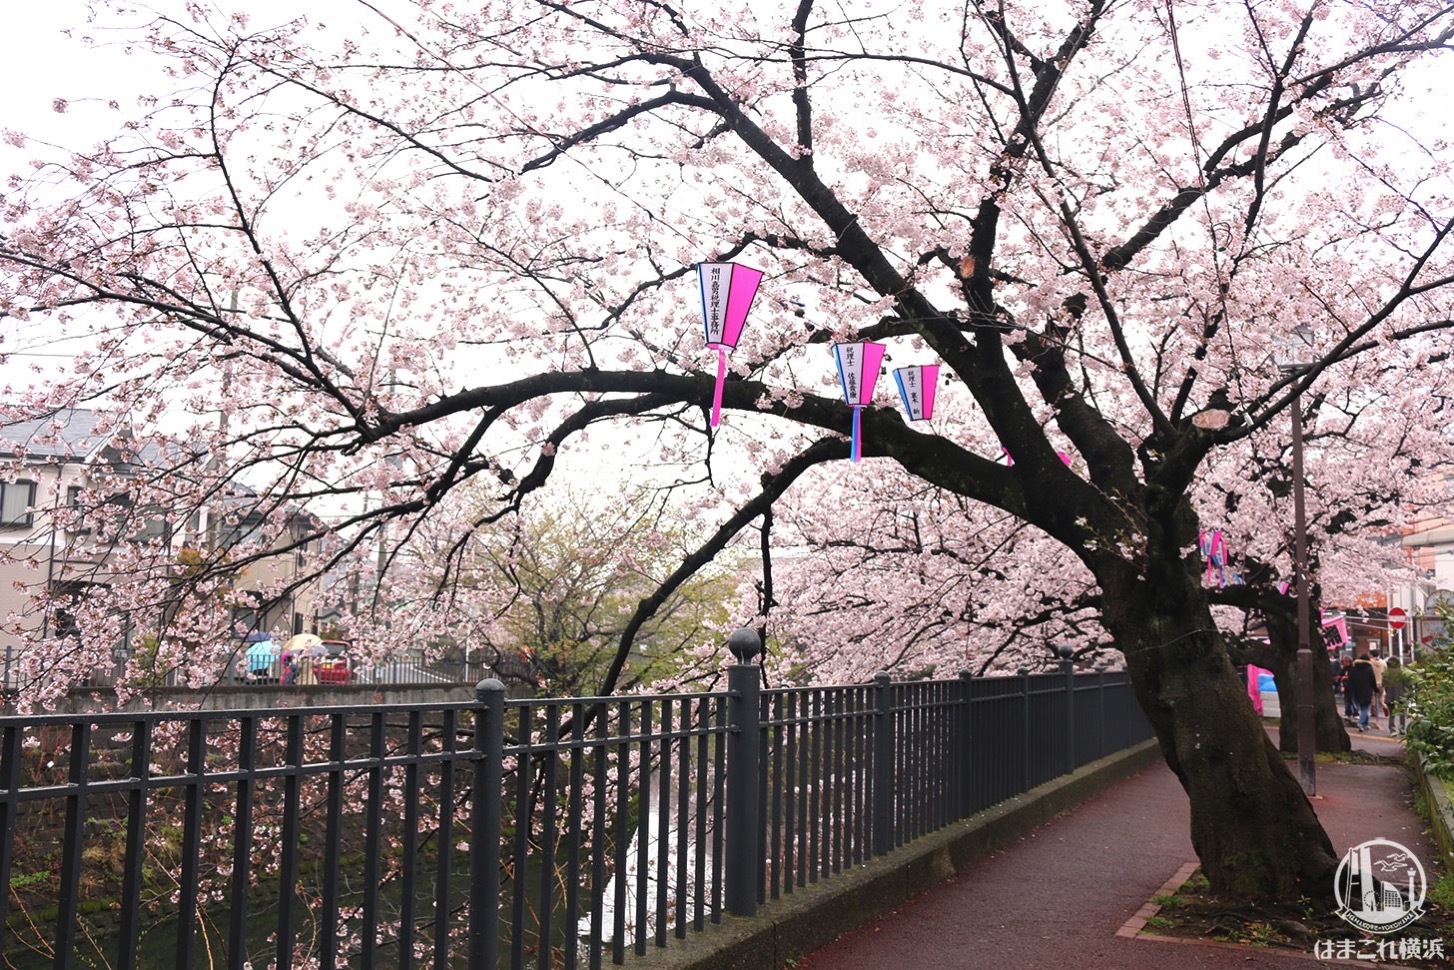 大岡川プロムナード 桜のトンネル